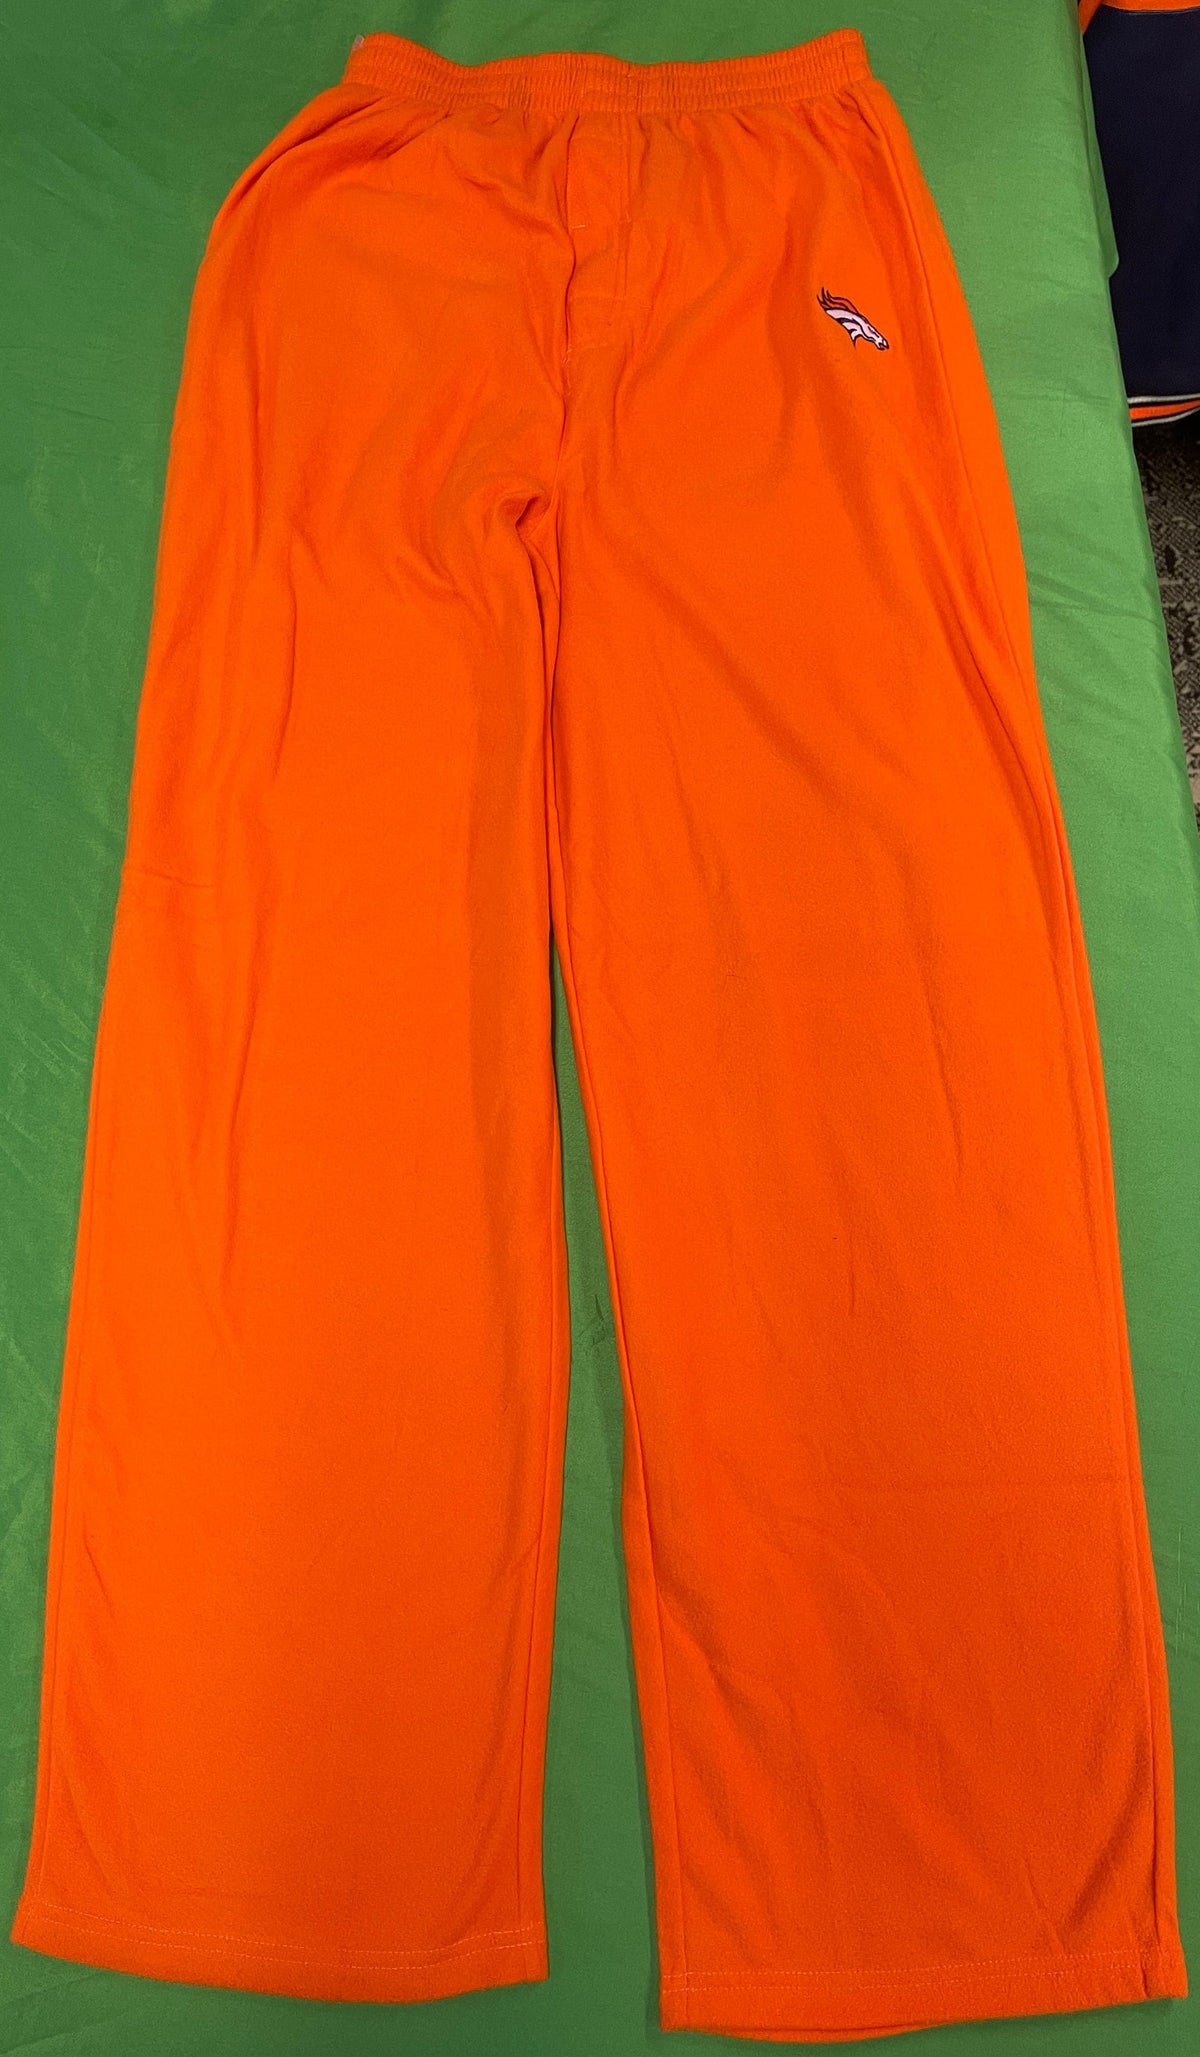 NFL Denver Broncos Orange Fleece Pyjama Bottoms Youth X-Large 18